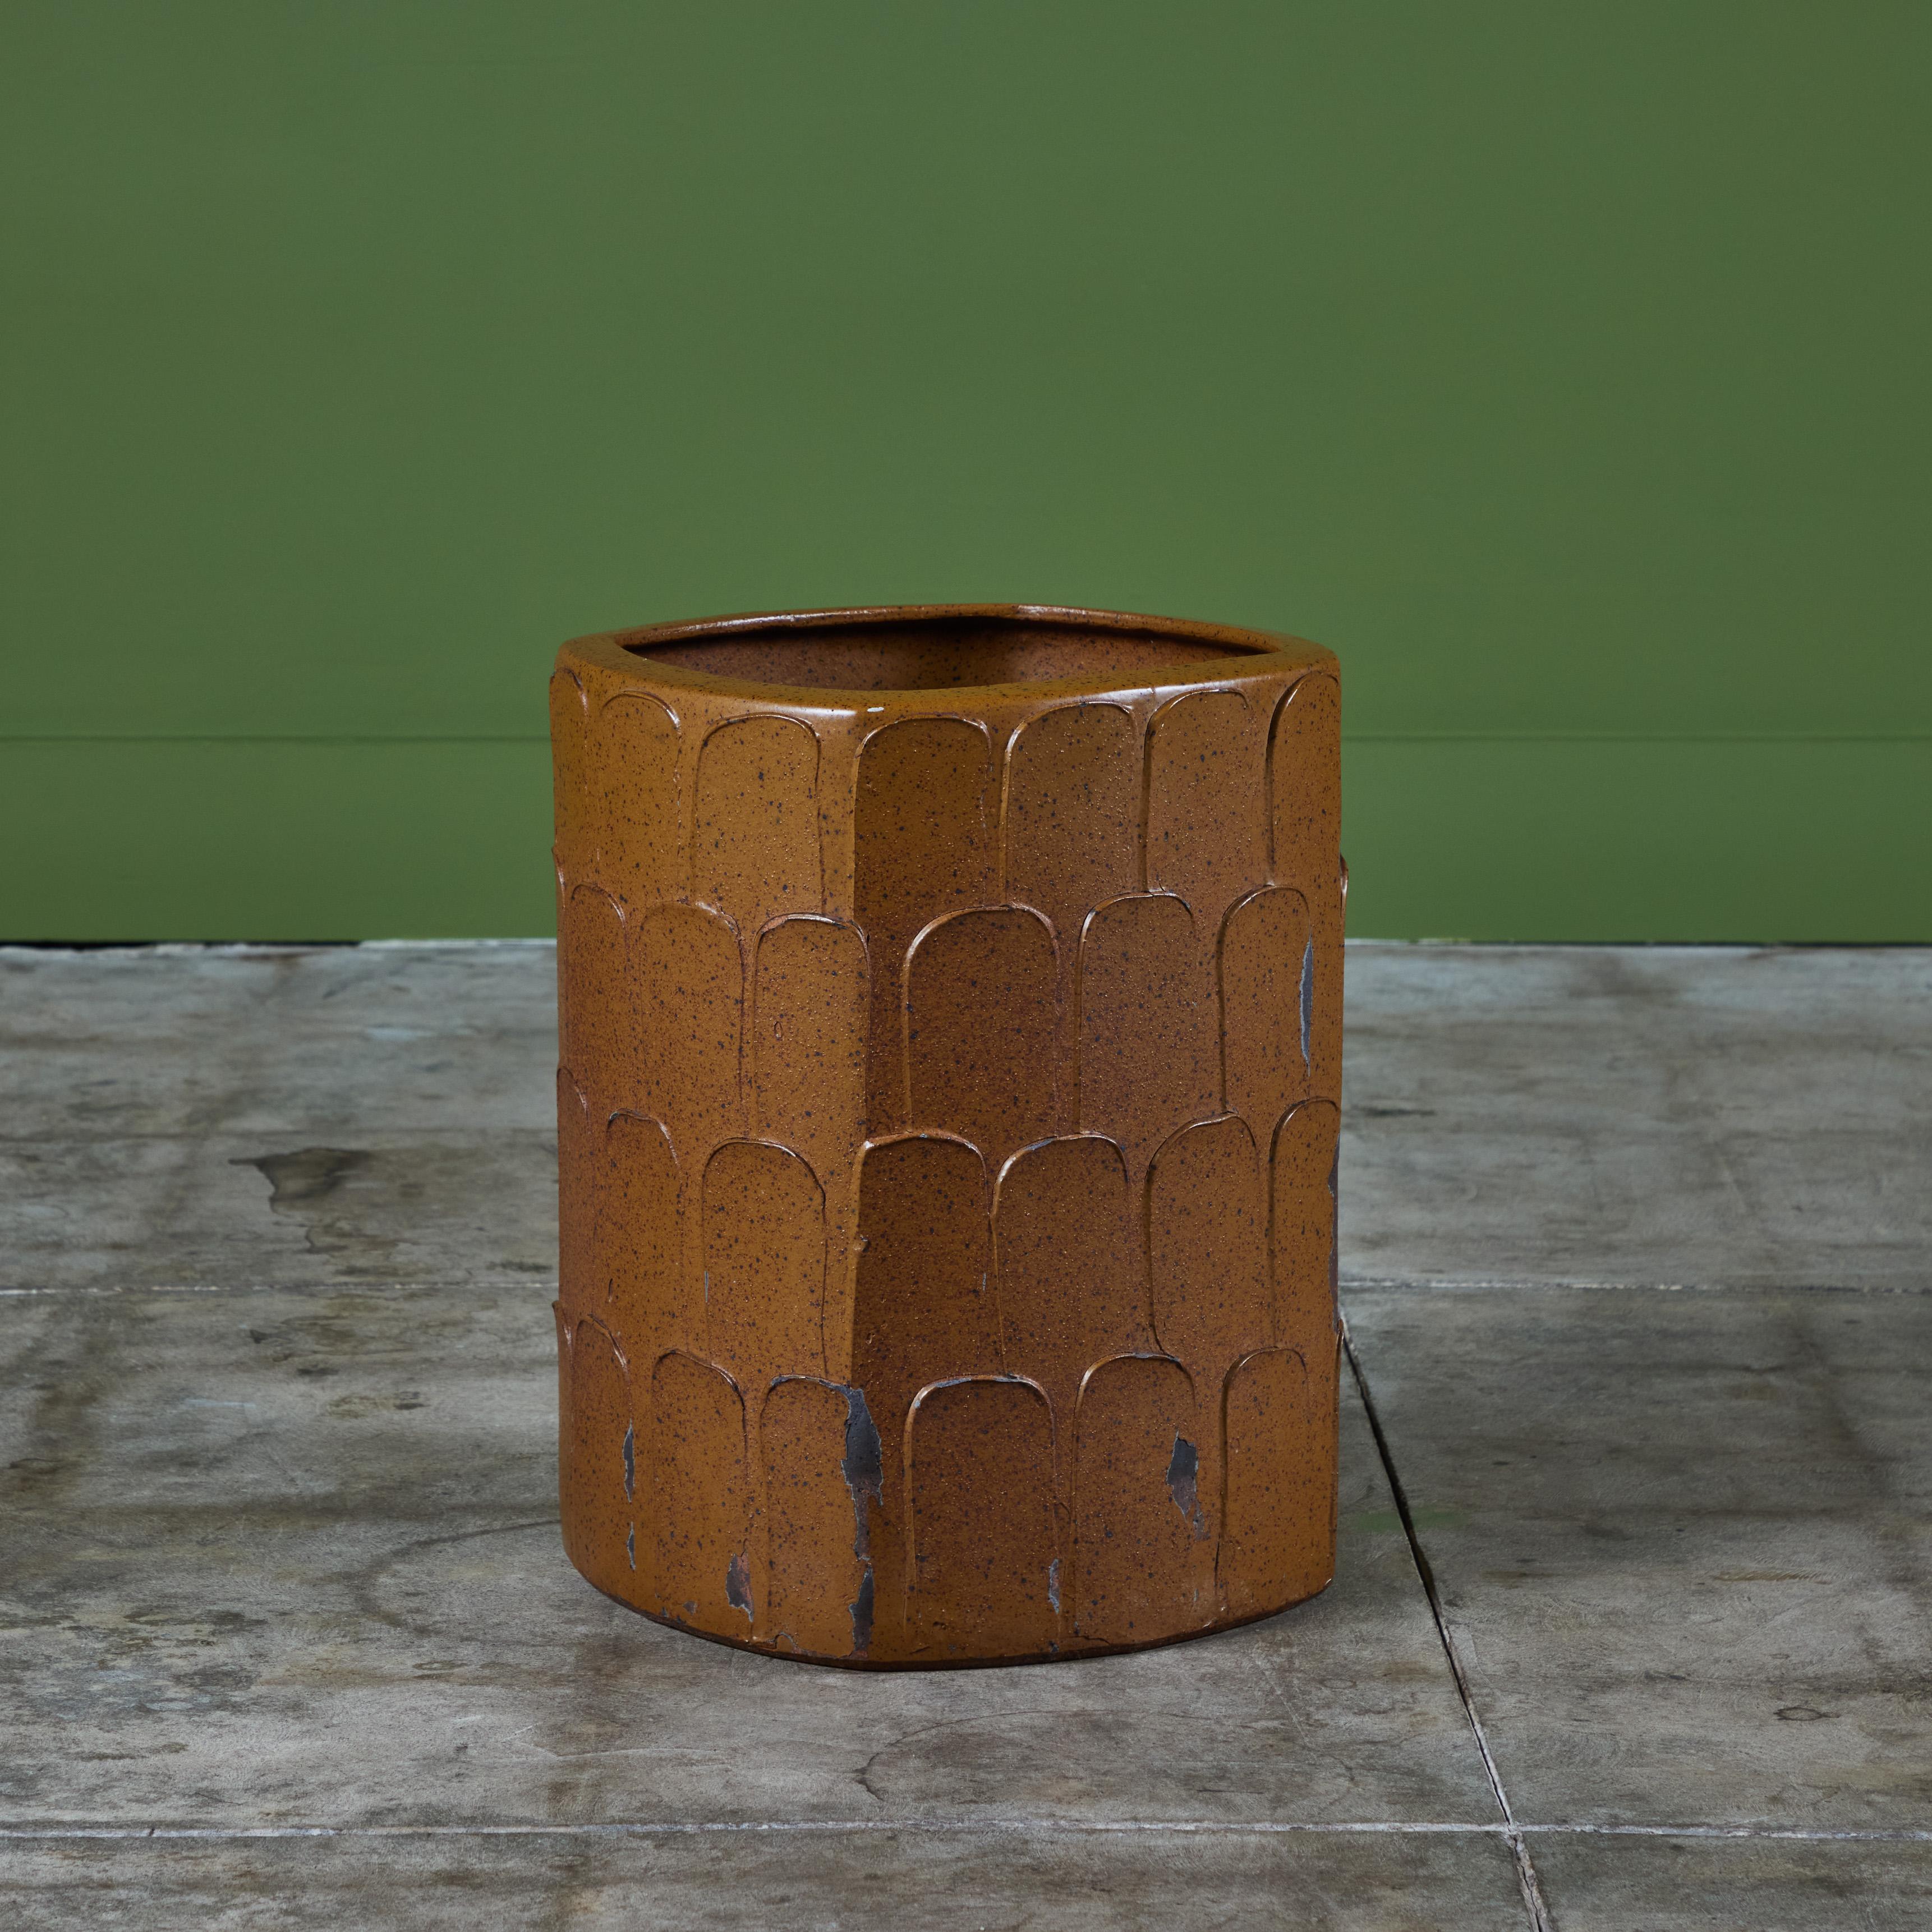 Glasiertes Pflanzgefäß der Keramikkünstlerin Marilyn Kay Austin für Architectural Pottery mit Glasur und Blattmuster von David Cressey. Dieses Exemplar hat eine abgerundete, quadratische Form und ein ganzflächiges Blattmuster. Die gesprenkelte